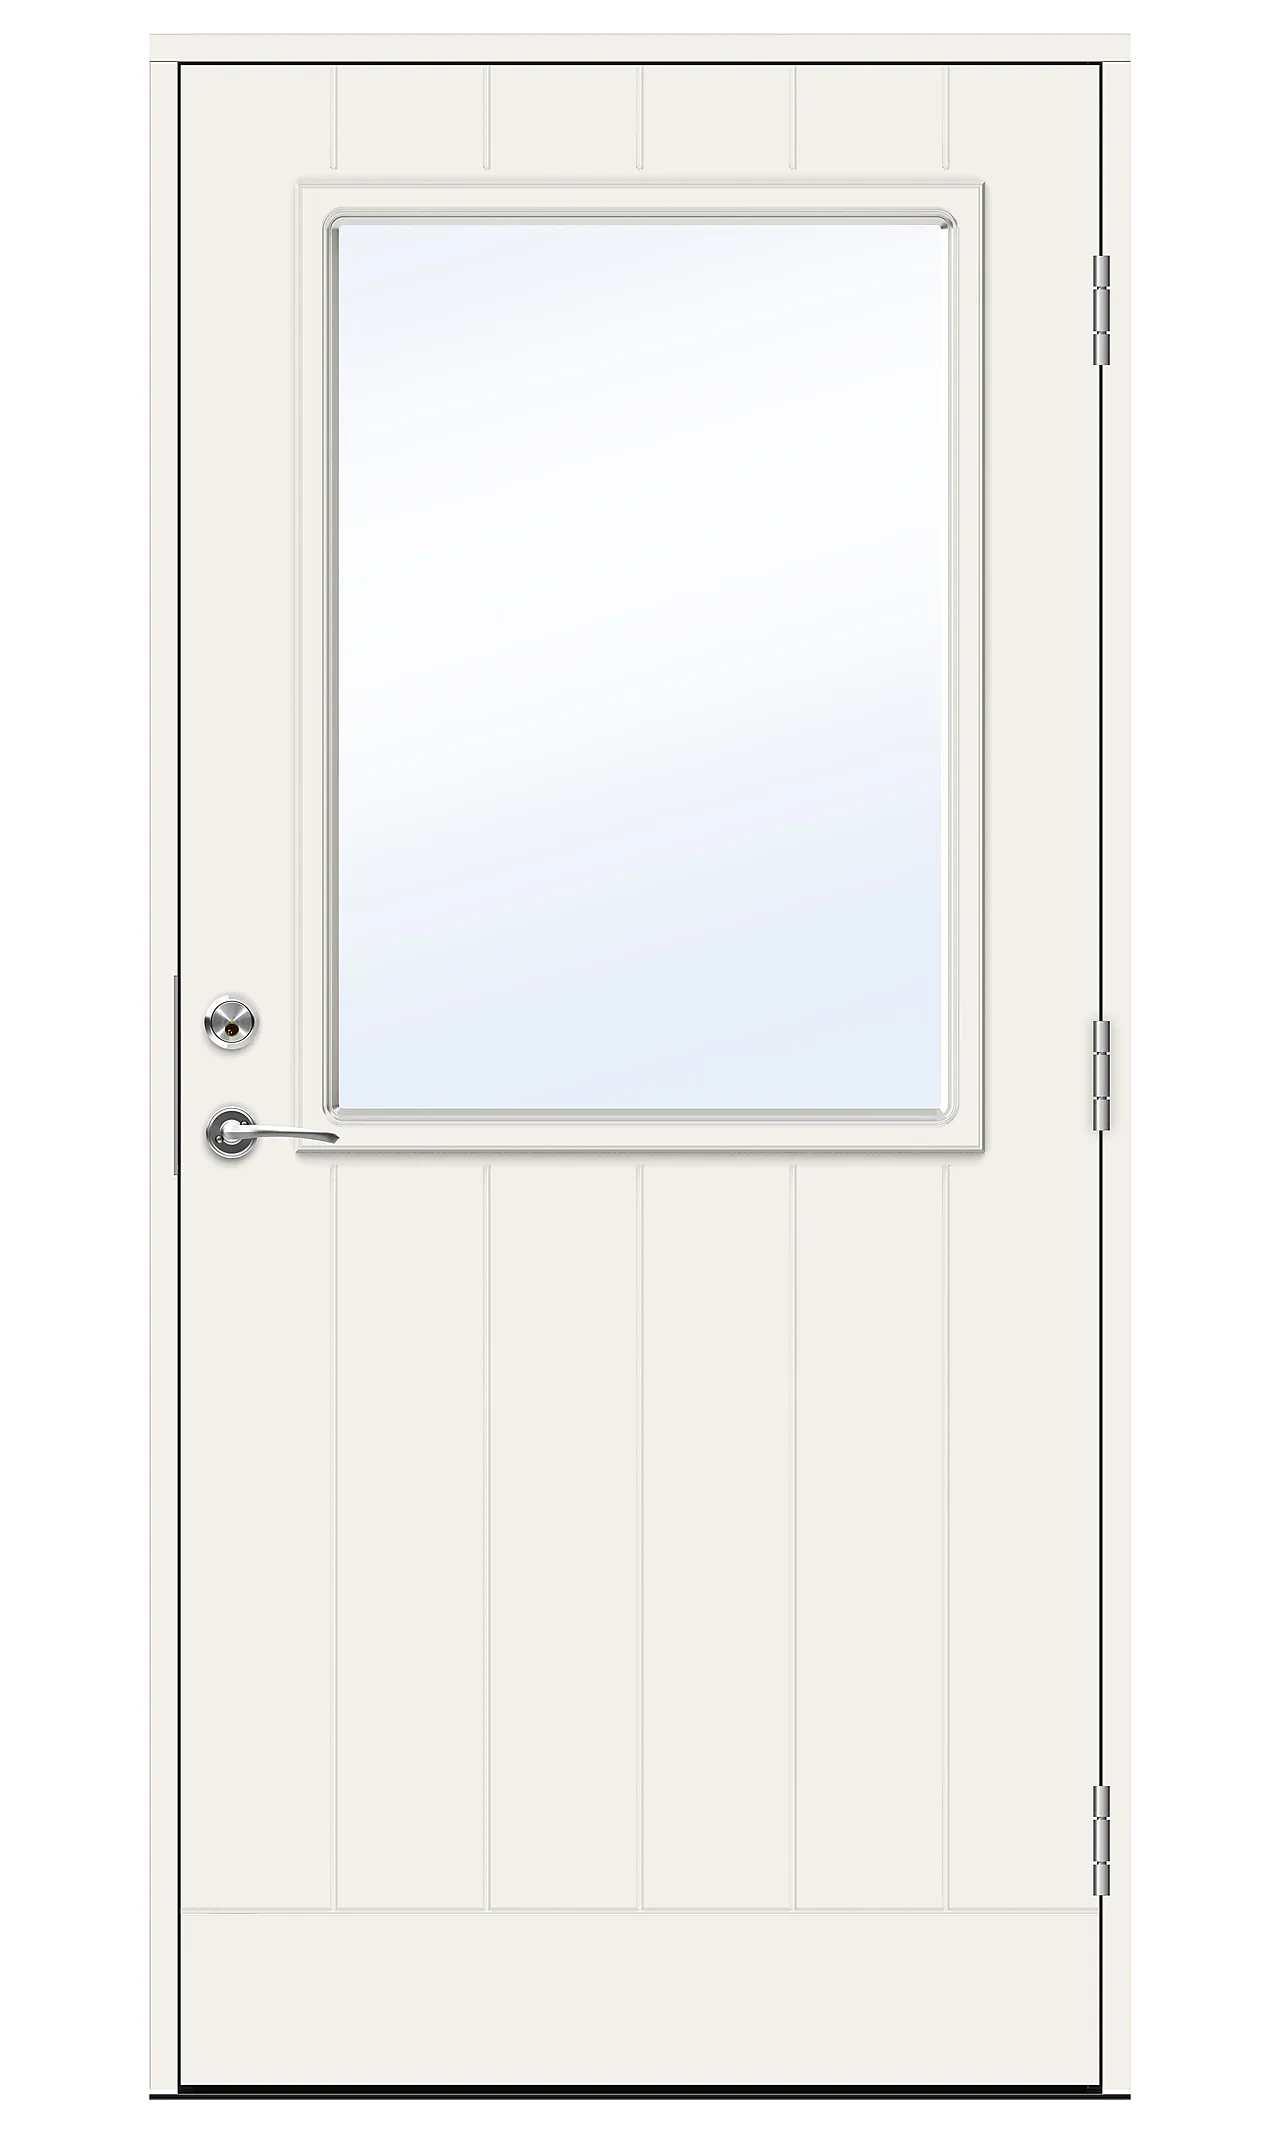 Dørsett eco brahms 10x21v hvit ytterdørsett med klart glass